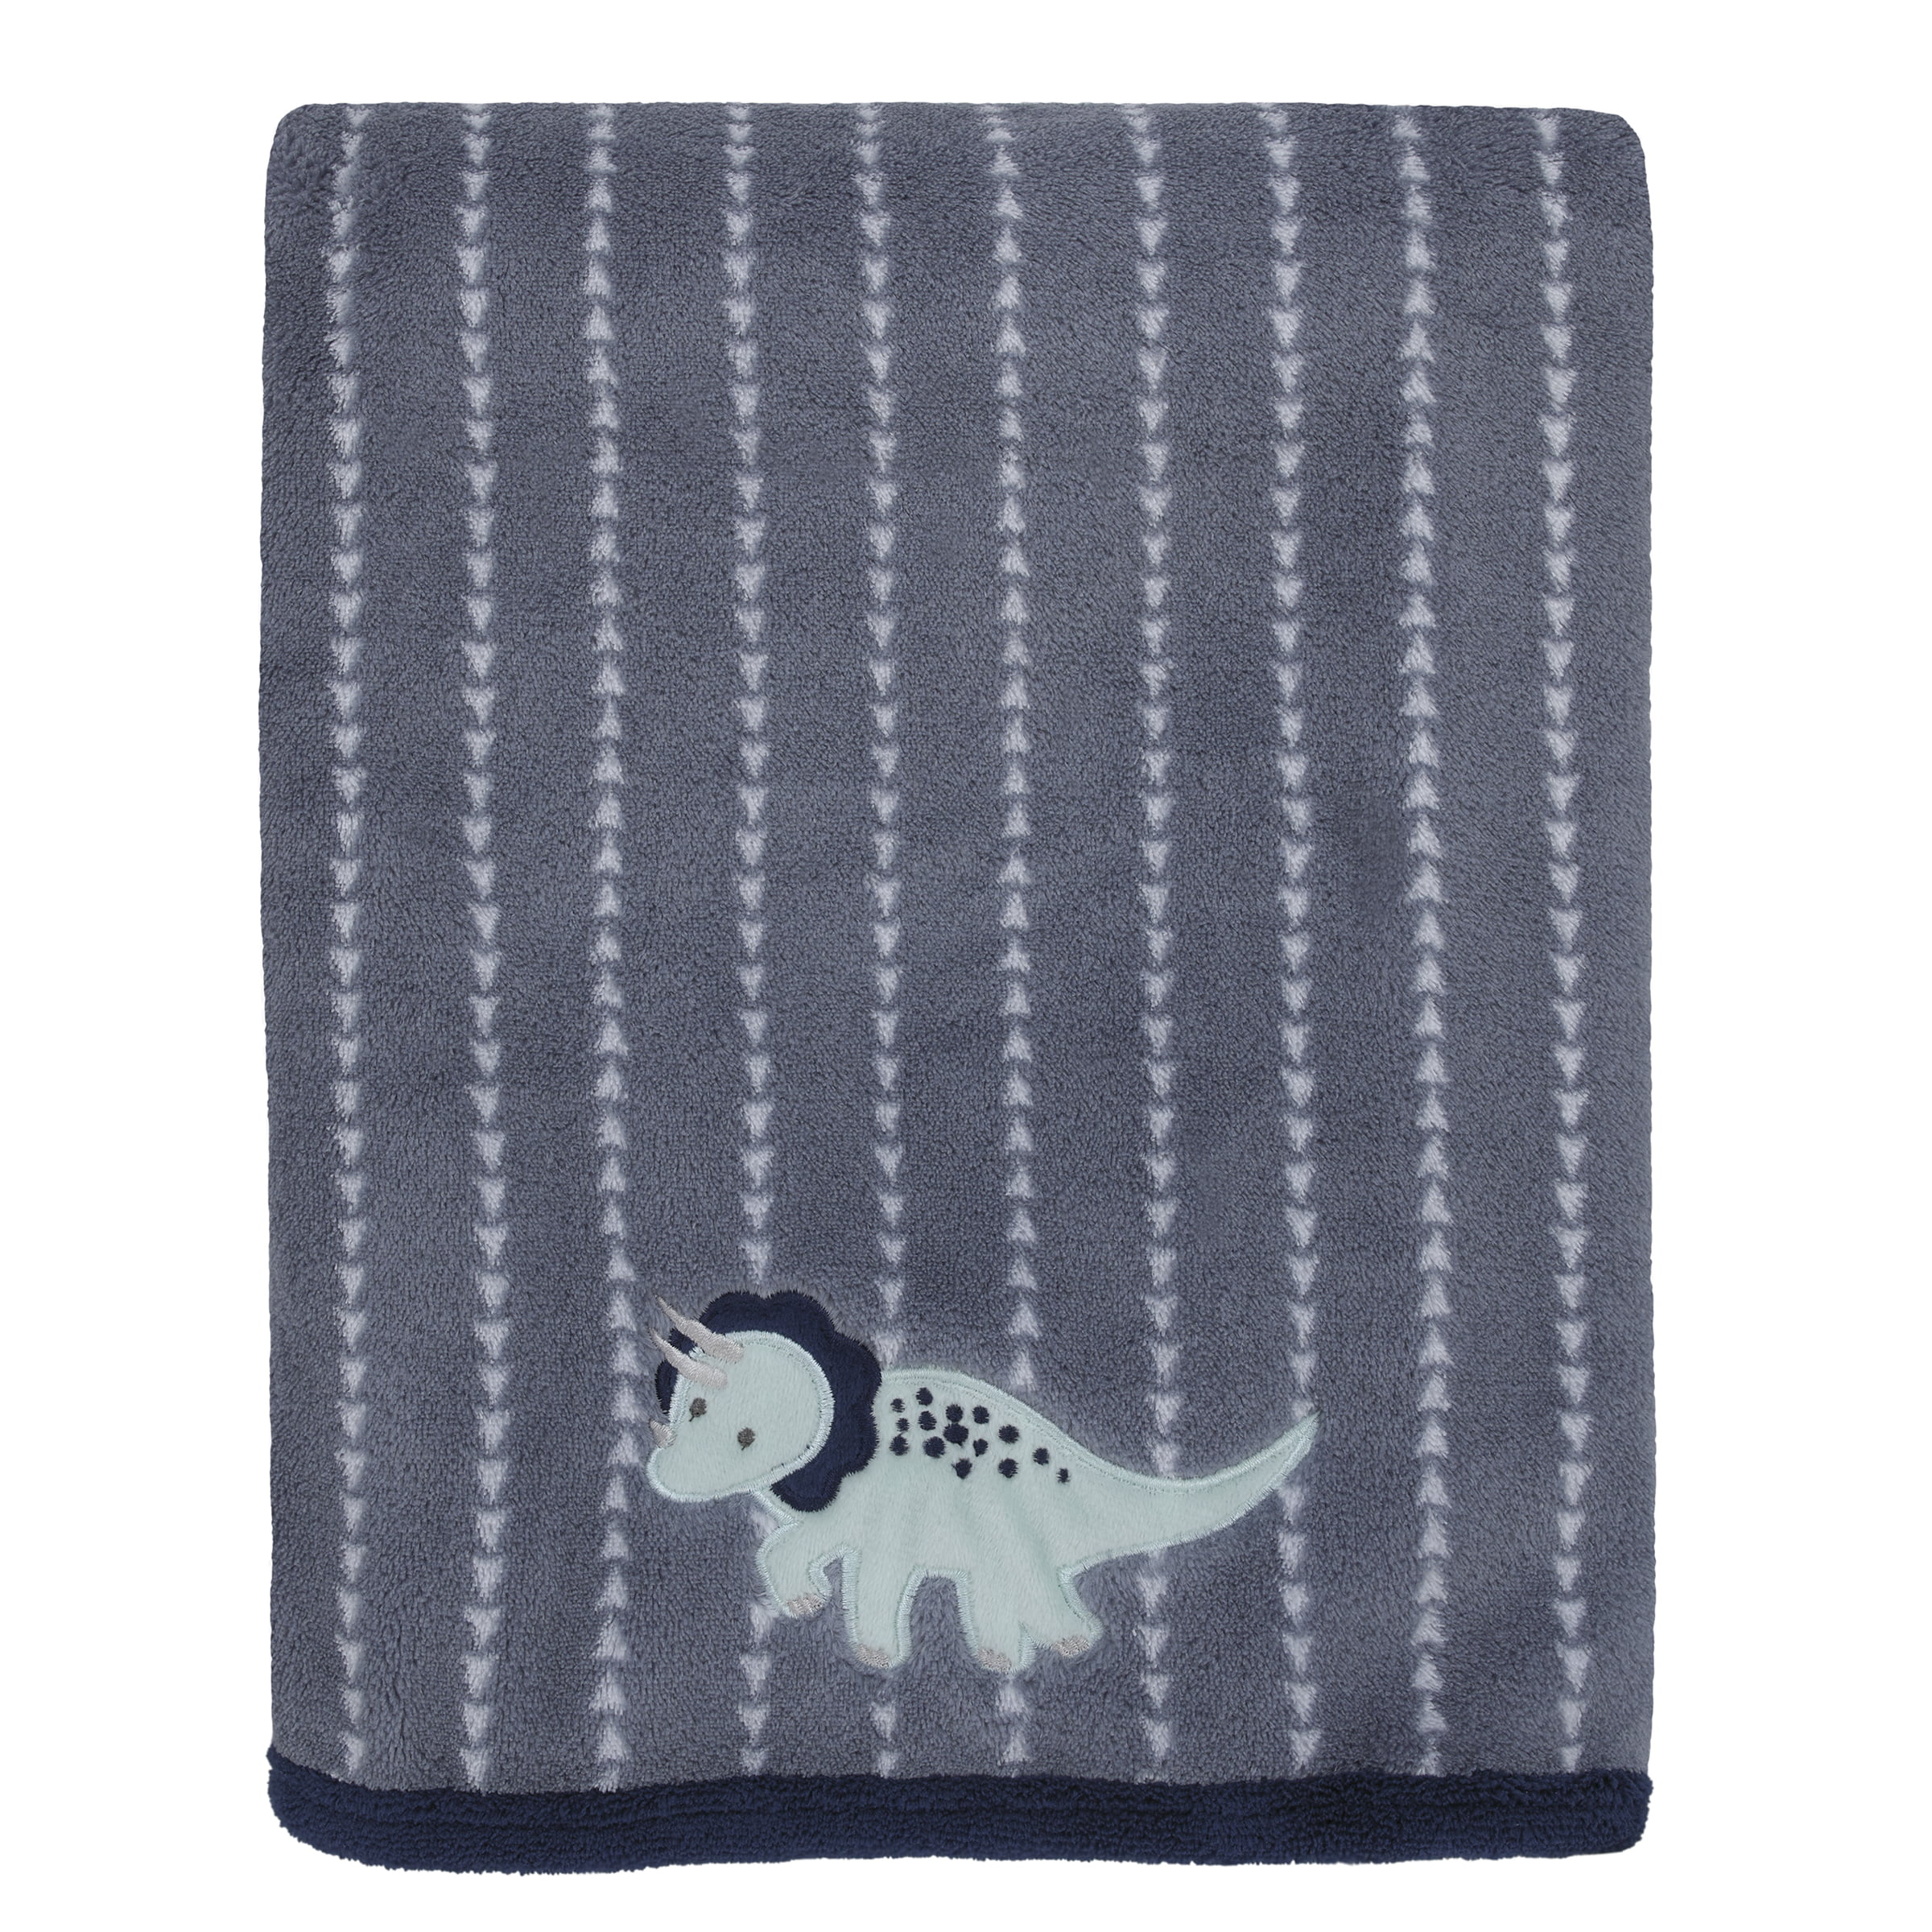 Baby Boy Plush Blanket With Truck Applique Super Soft Newborn 30x40 